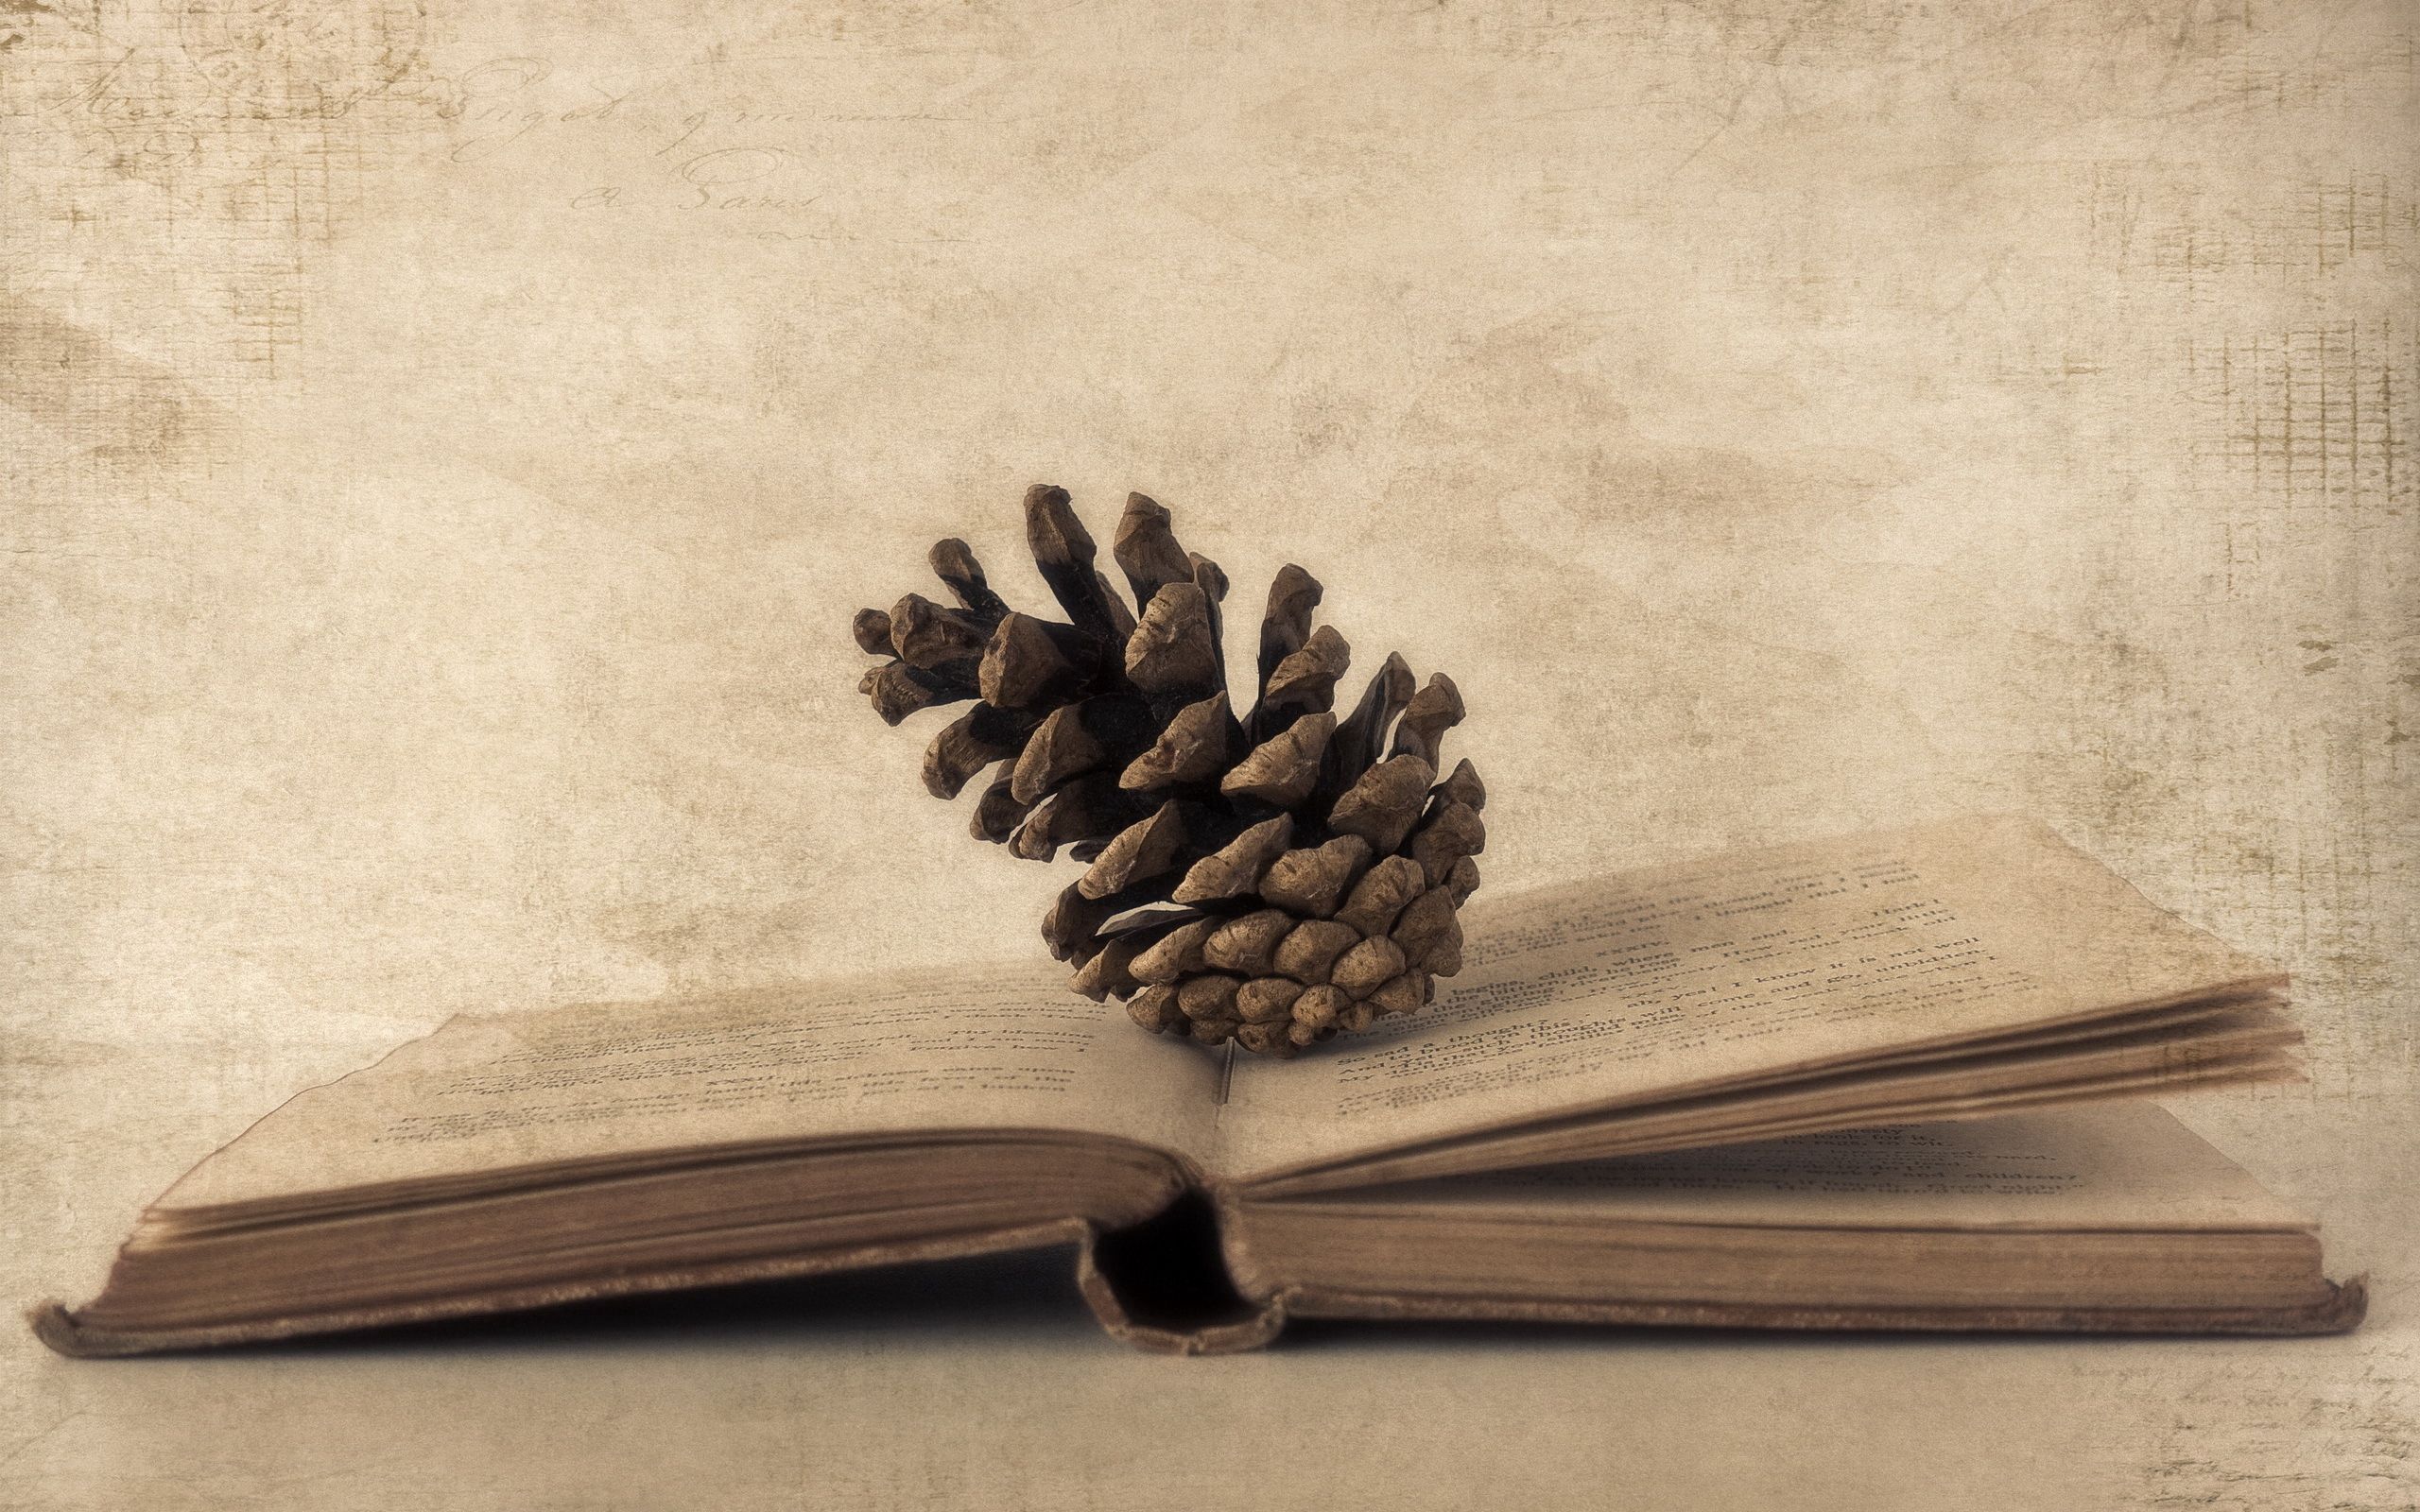 cones, book, miscellanea, miscellaneous, paper, old photo